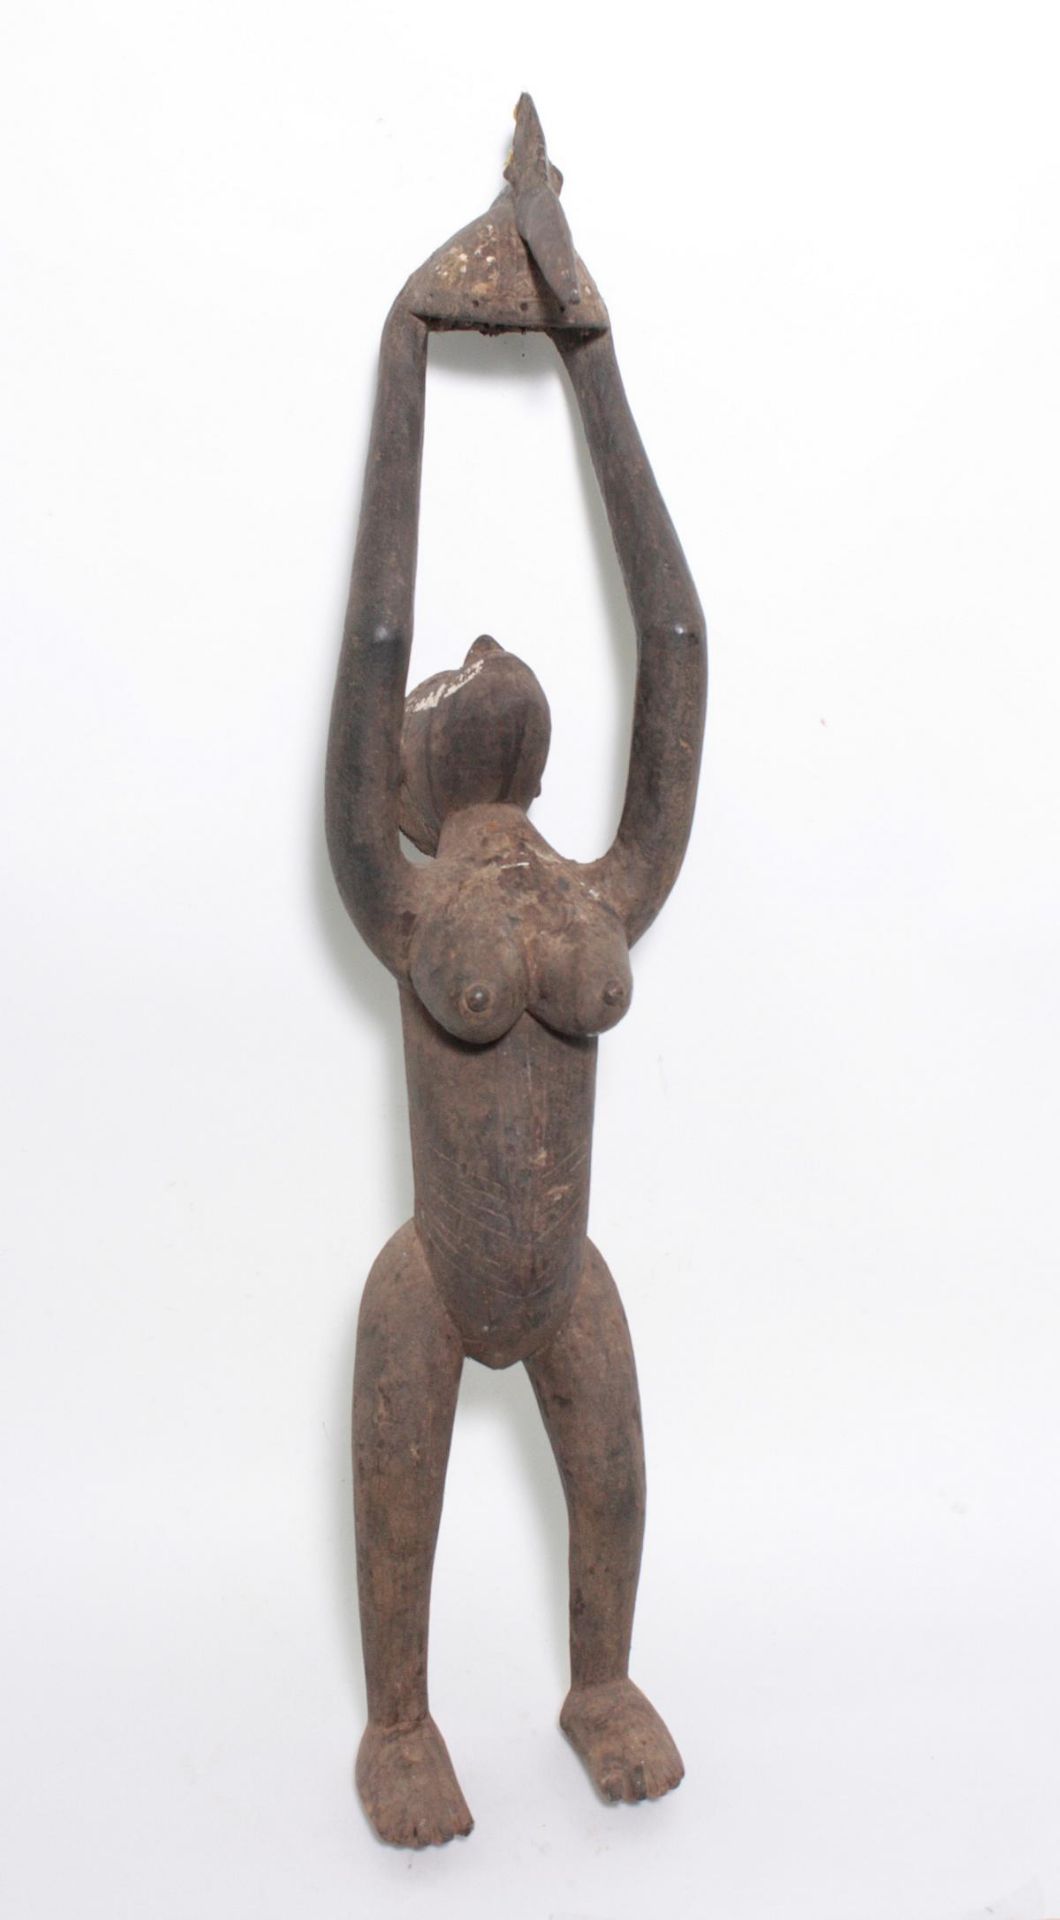 Ältere Weibliche Figur der Mossi, Burkina FasoHolz geschnitzt. Diese schlanke weibliche Statue